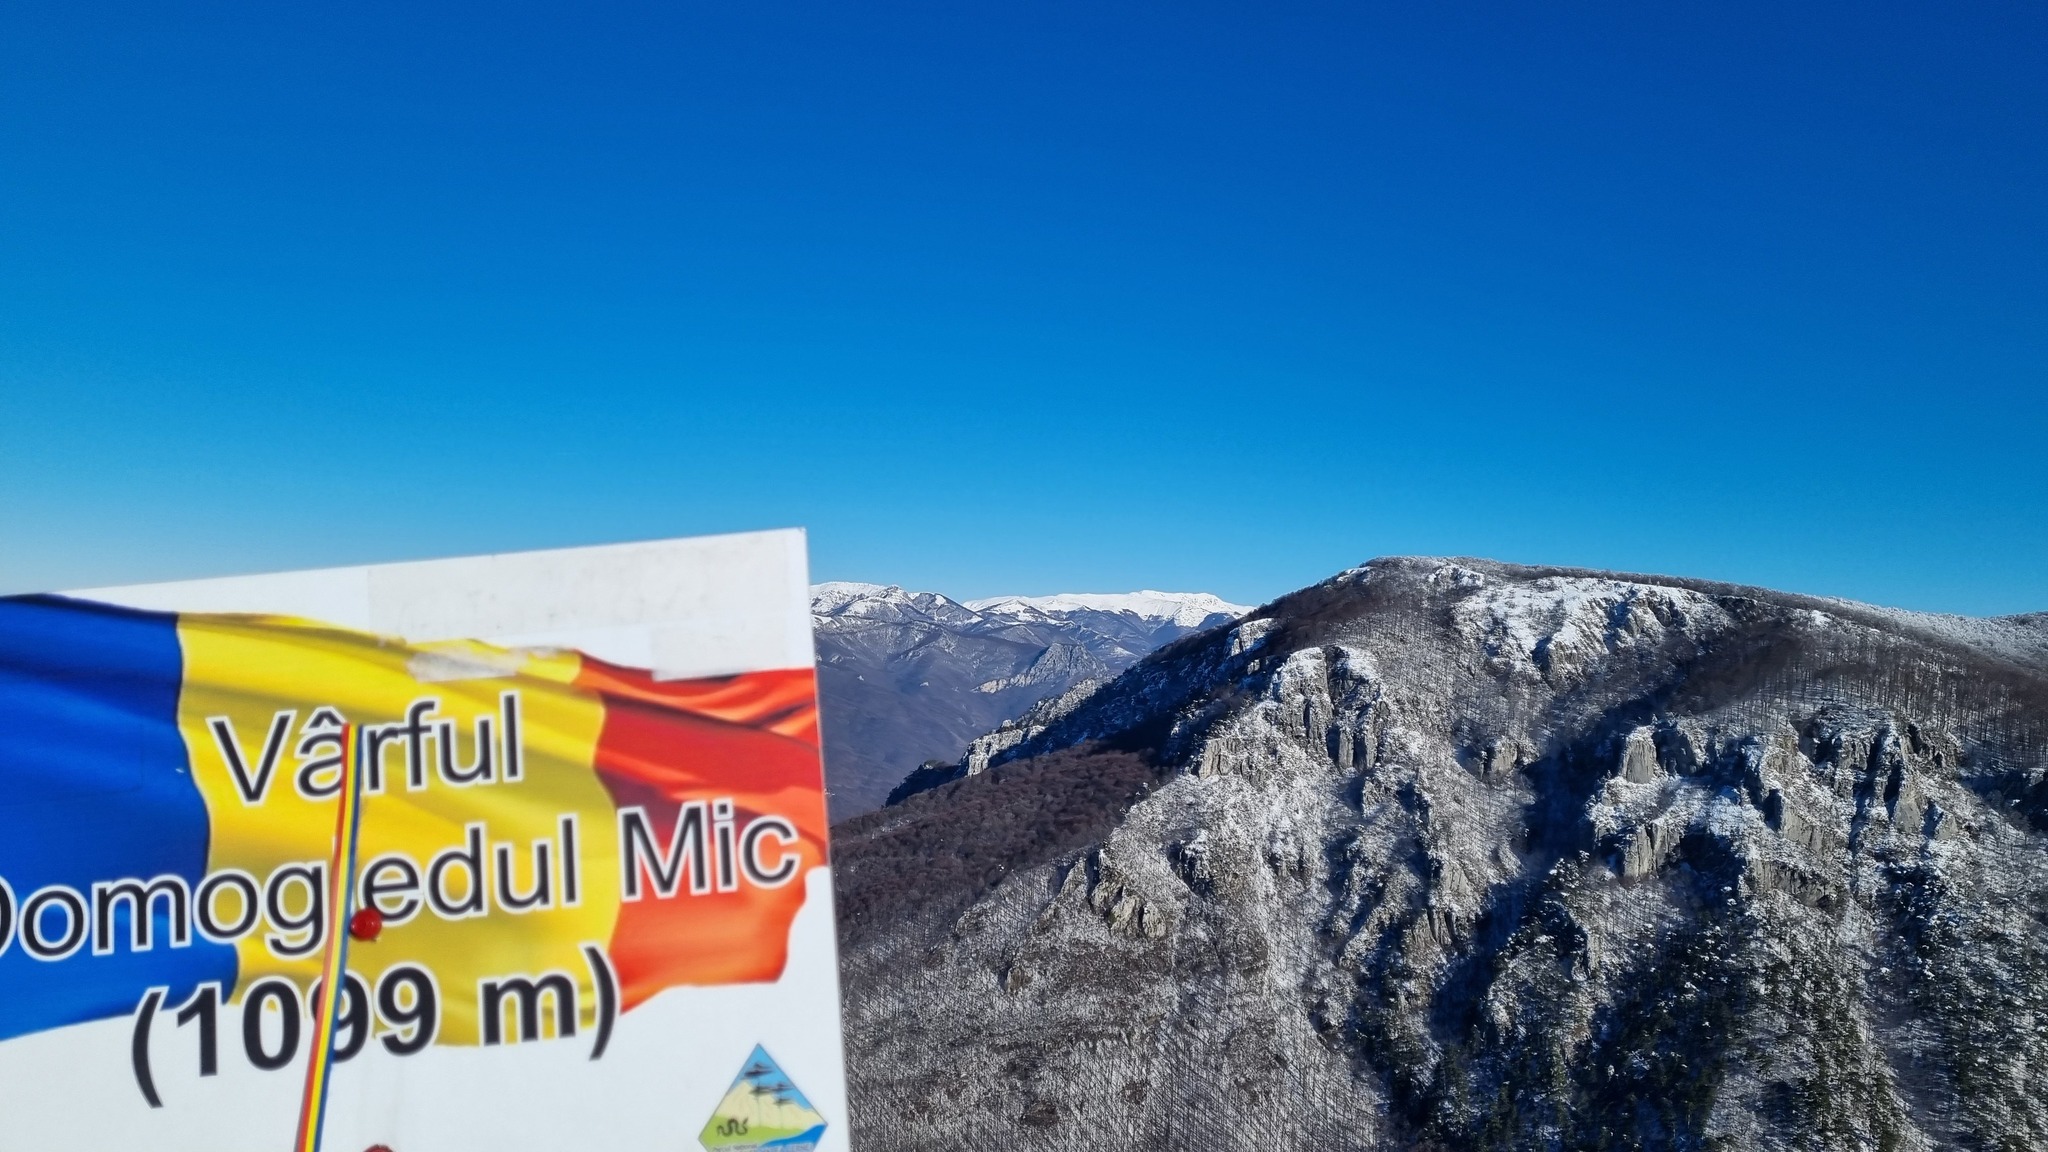  Vedere de pe Vf. Domogledul Mic (1099 m) - Cristian Oprițescu